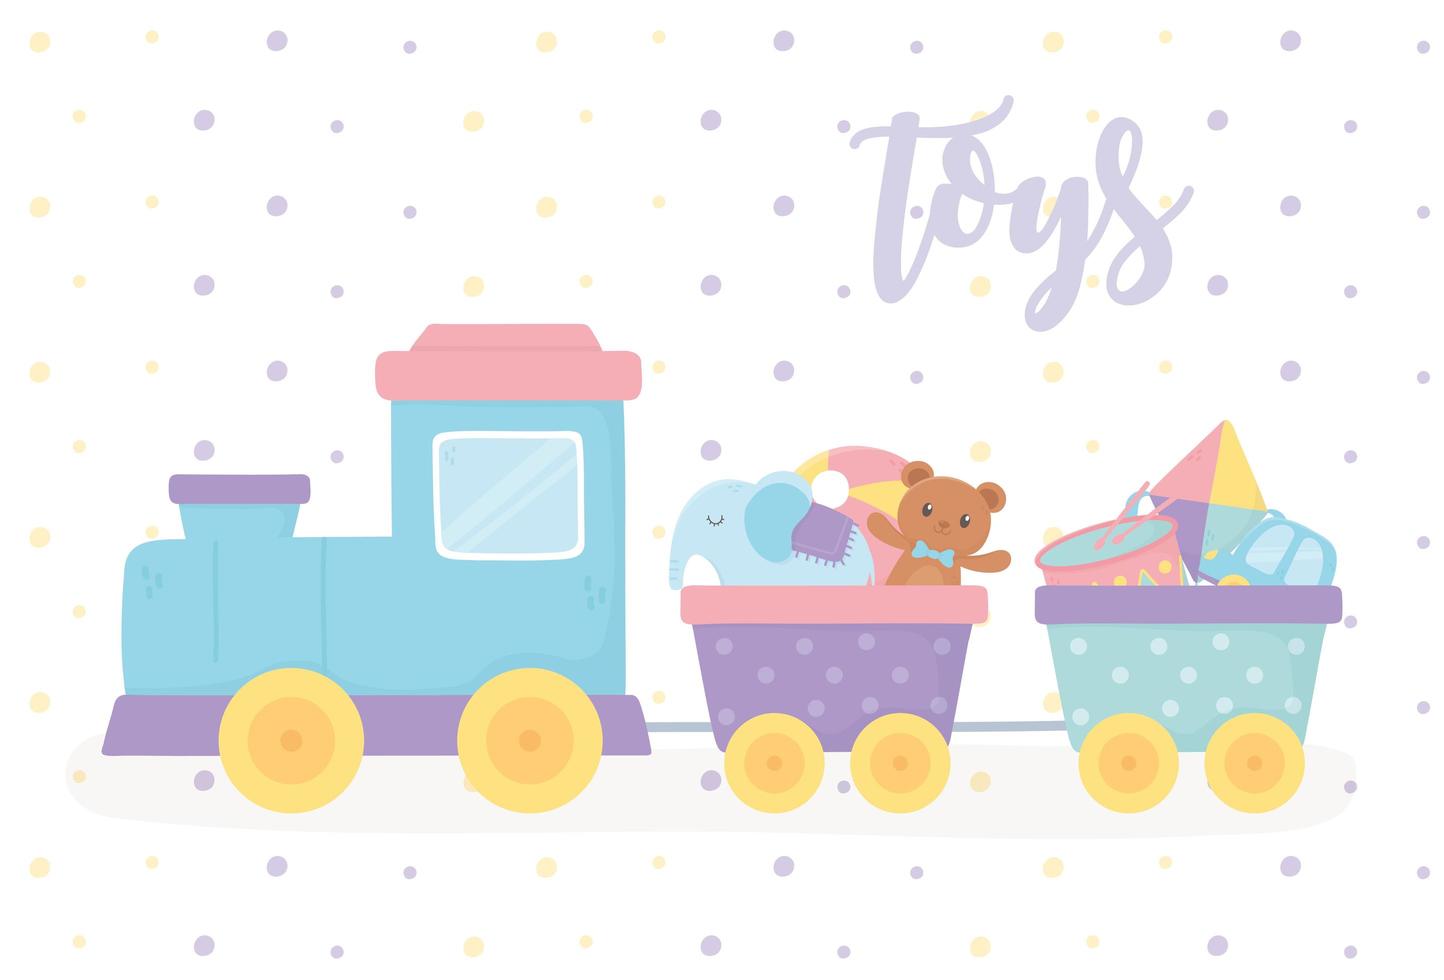 filled train with teddy bear kite elephant cartoon kids toys vector